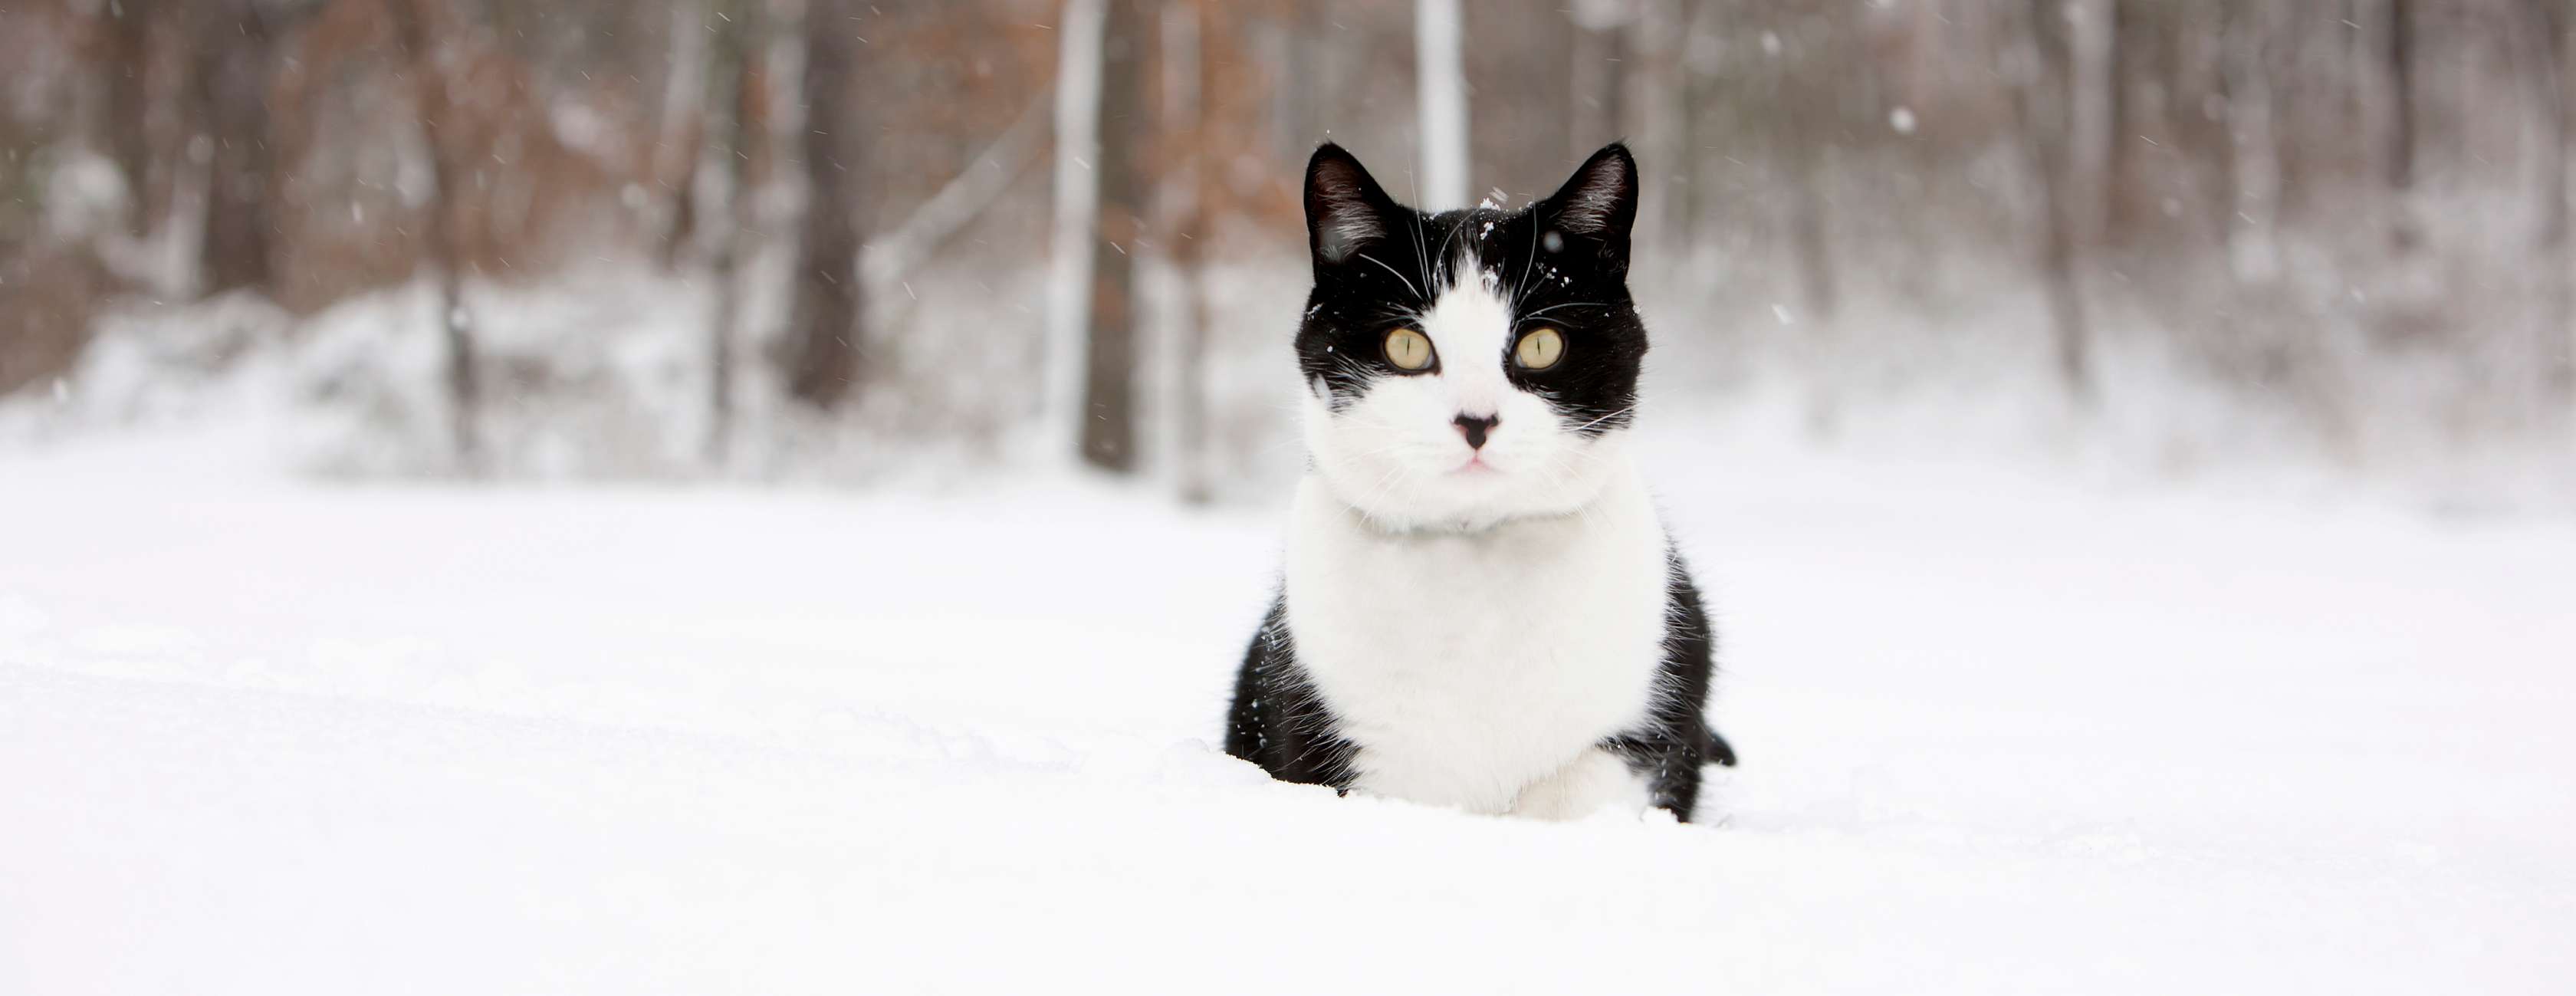 Allianz - Katze im Schnee